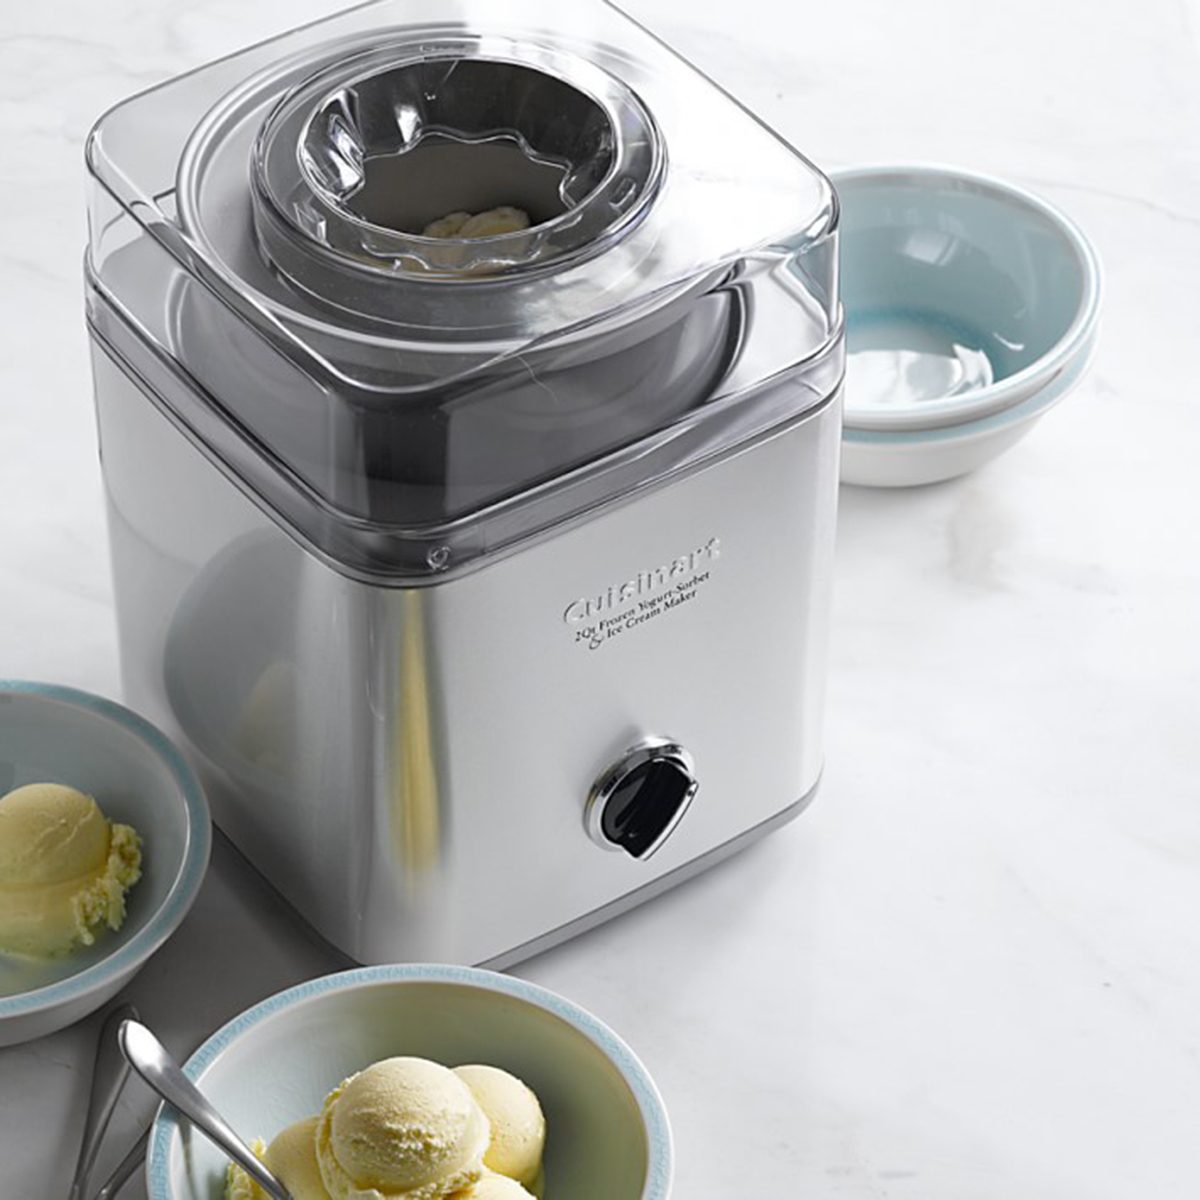 https://www.tasteofhome.com/wp-content/uploads/2020/06/cuisinart-stainless-steel-ice-cream-maker.jpg?fit=700%2C700